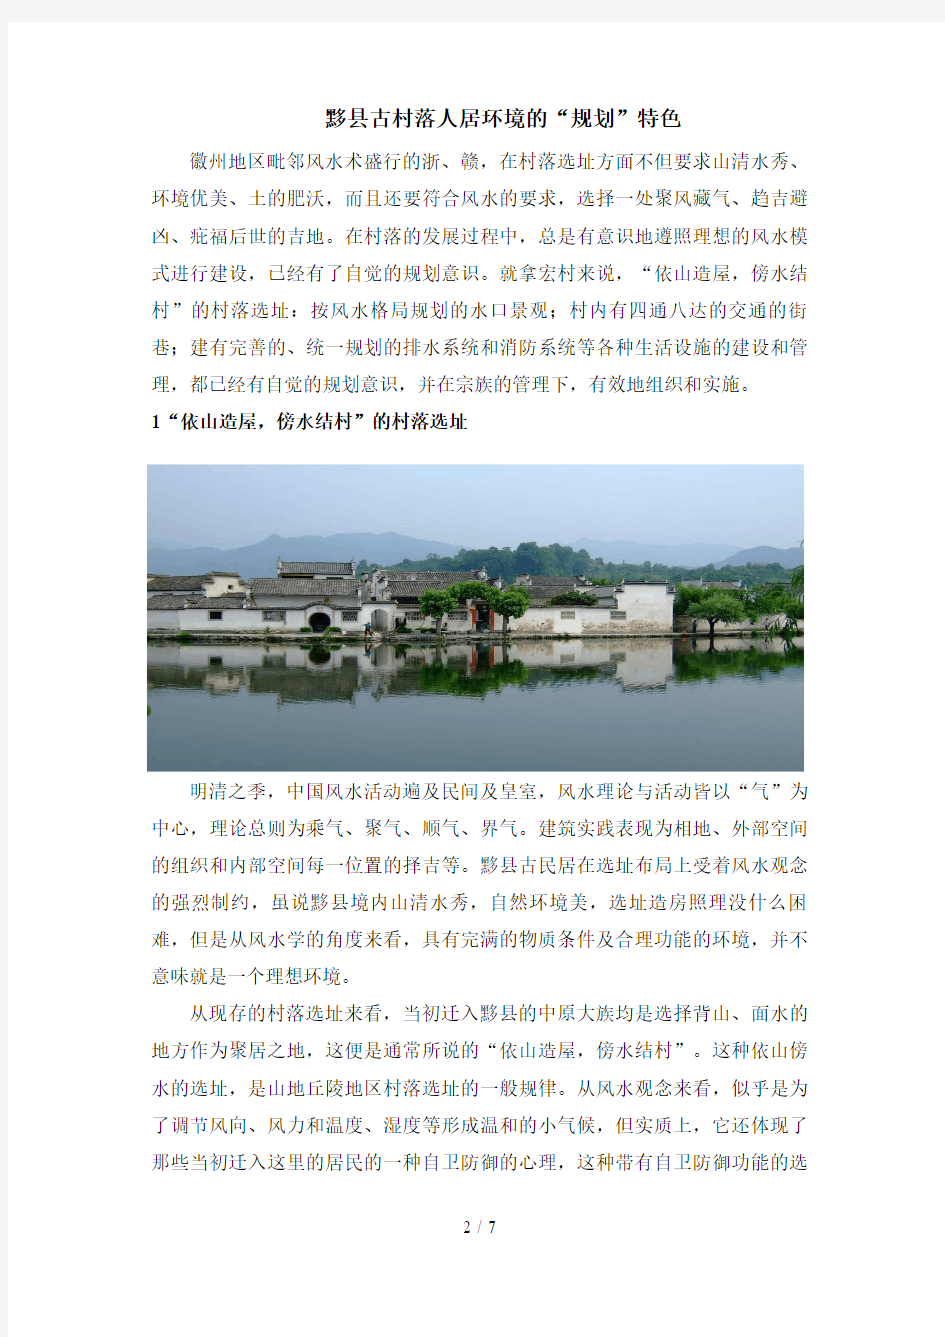 关于黟县古村落人居环境的调查报告